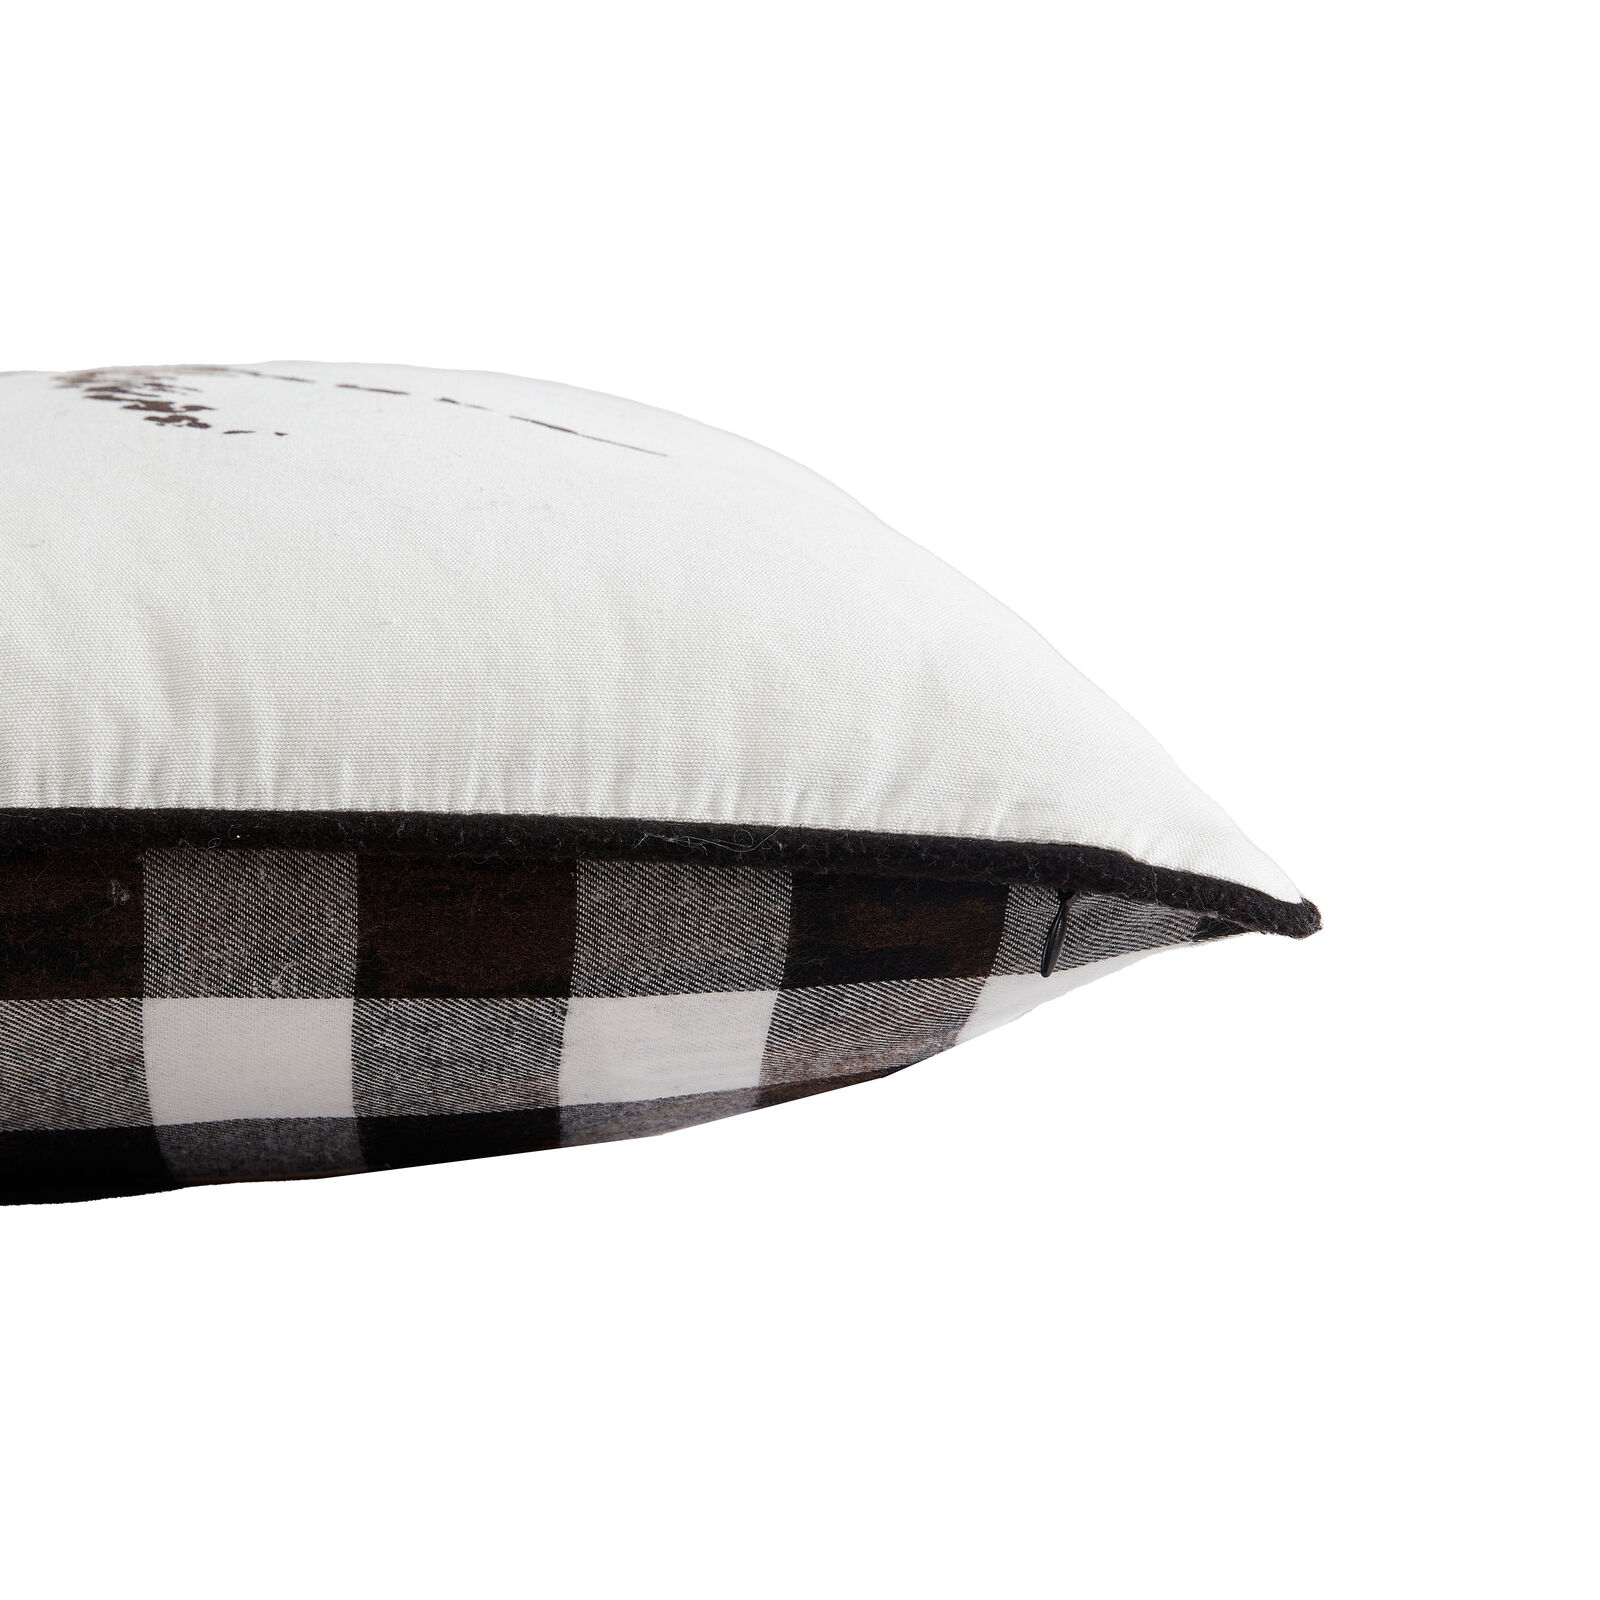 Eddie Bauer 100% Cotton (Soft & Breathable), Square Pillow